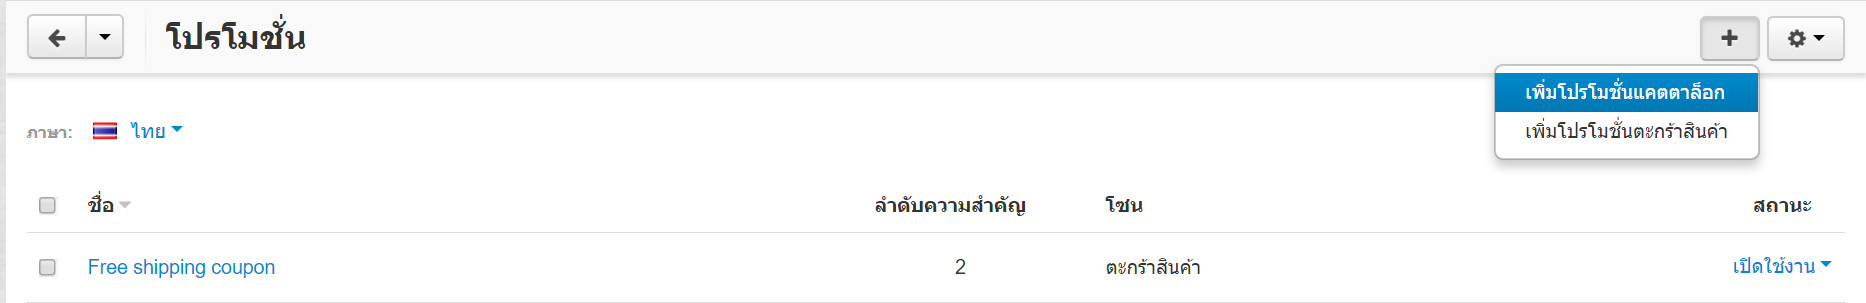 เว็บไซต์สำเร็จรูปไทย - คู่มือร้านออนไลน์ - การจัดการร้านออนไลน์ - สร้างเว็บไซต์ - การตลาด โปรโมชั่น promotion